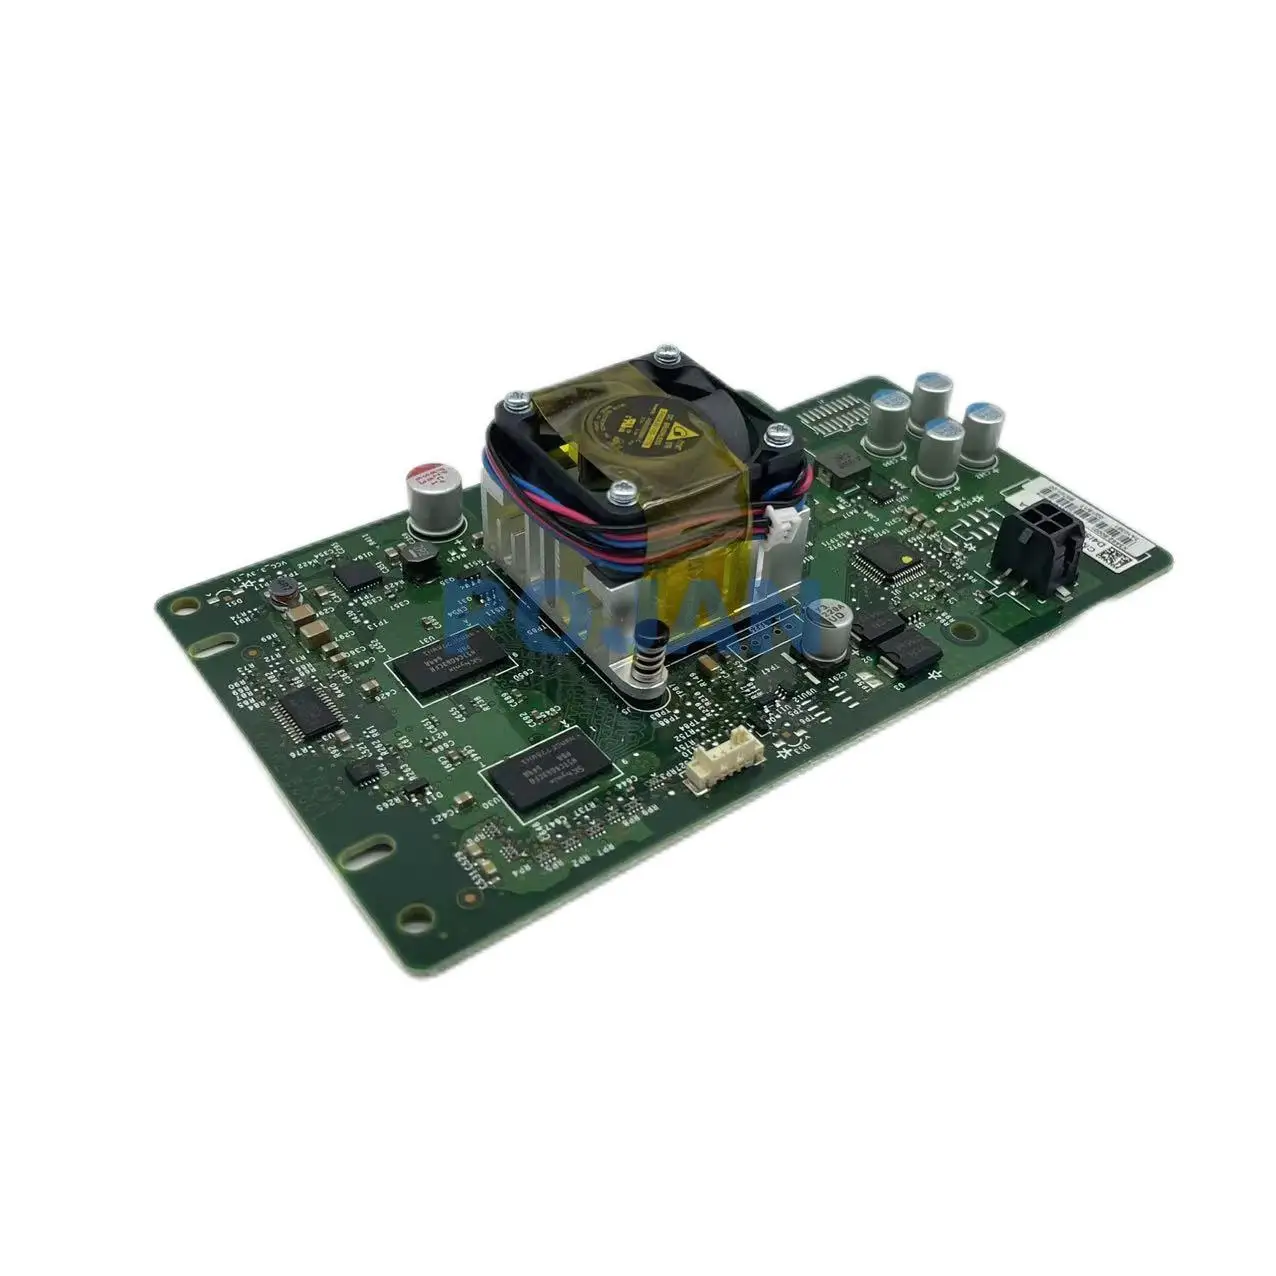 X3A62-60001 PC Dosky - PCA-Urýchľovač Dosky vhodné pre Laserjet Podarilo MFP E72525z E72530z E7782 E82540z E82550 E77825z POJAN